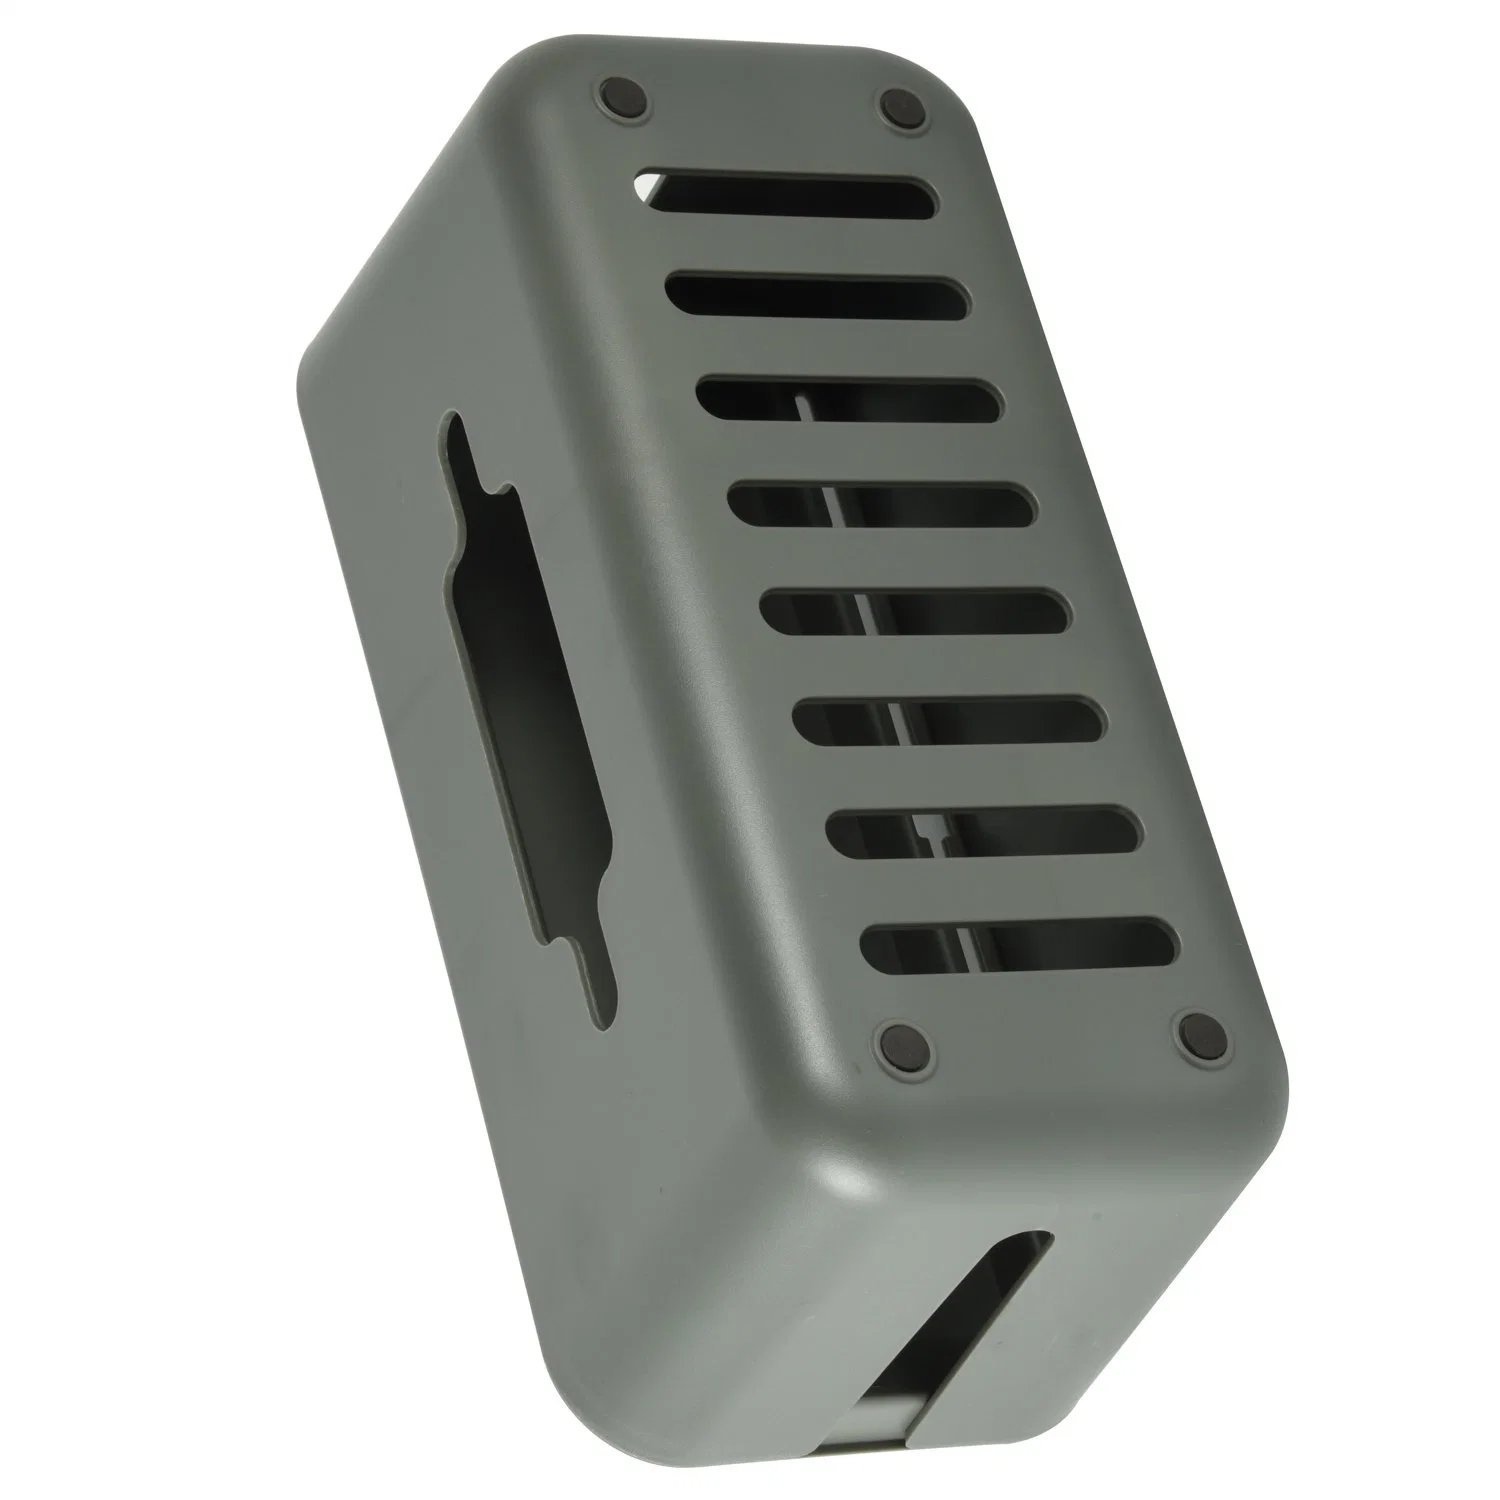 Enchufe de alimentación conector hembra Caja de almacenamiento antipolvo/cable cable cable cable receptor/alimentación Recogida de cables/Caja de gestión de cables